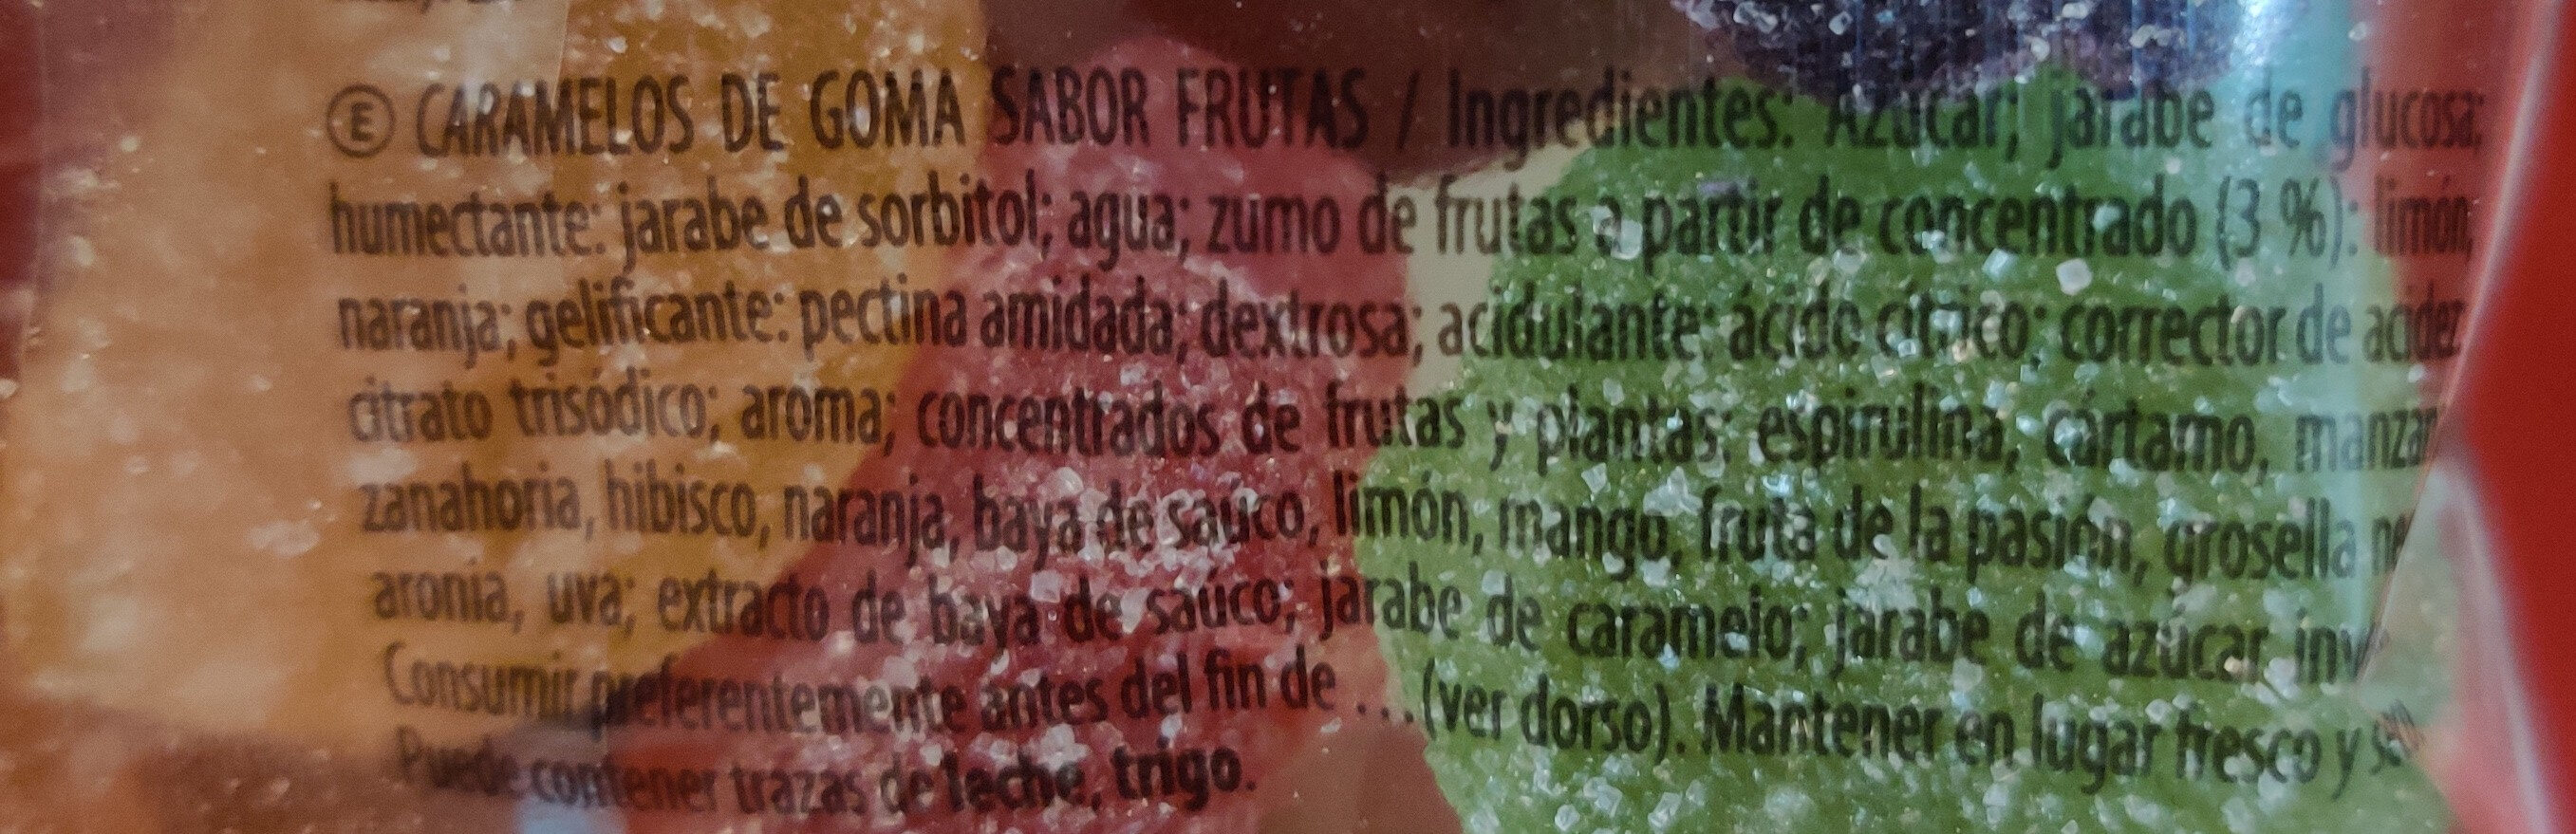 Frutissima vegana - Ingredients - fr